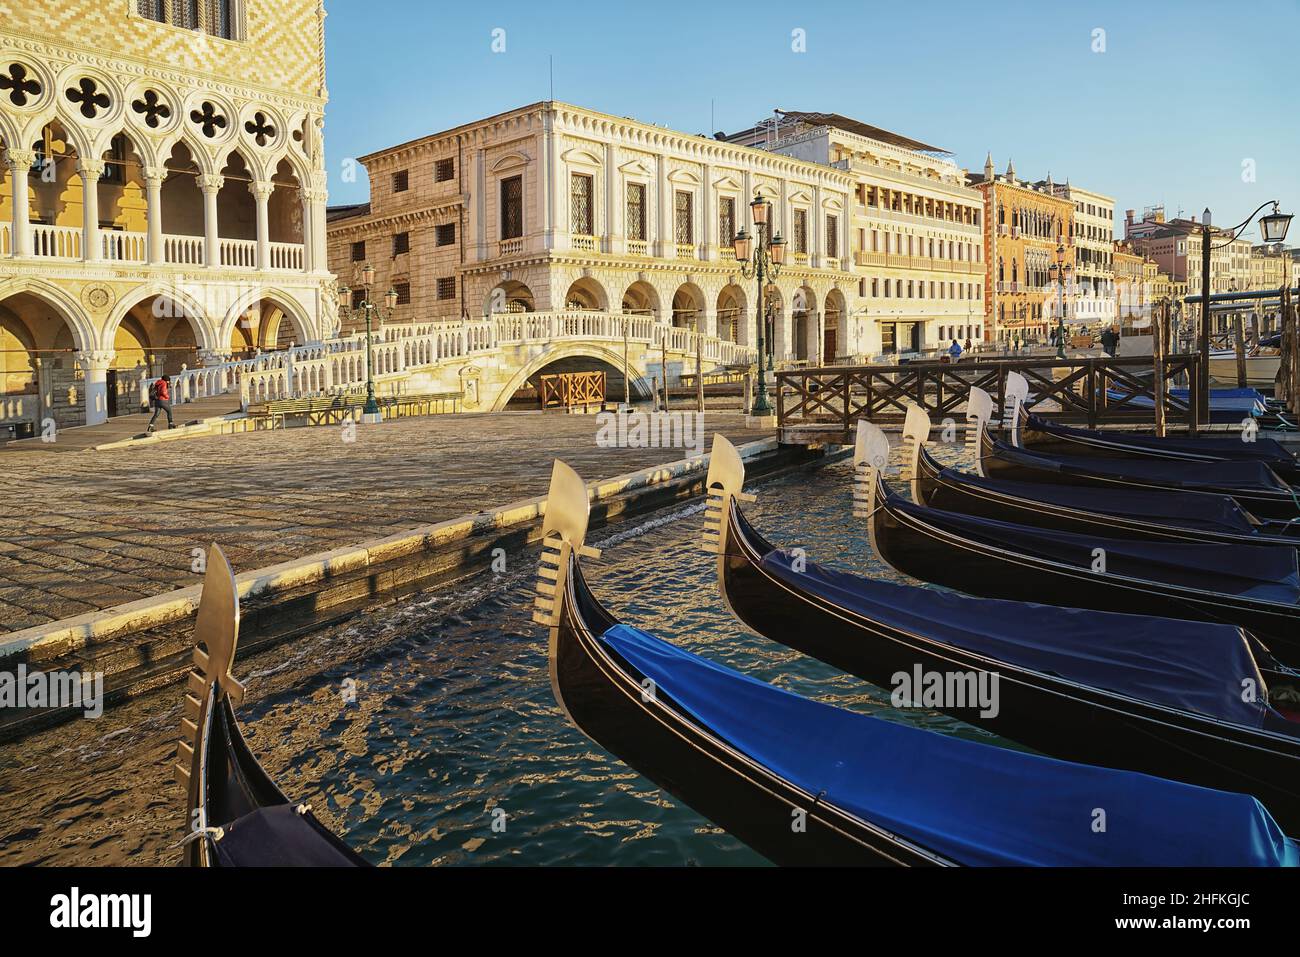 Particolare sul prua in acciaio delle gondole veneziane ormeggiate a Venezia. Foto Stock